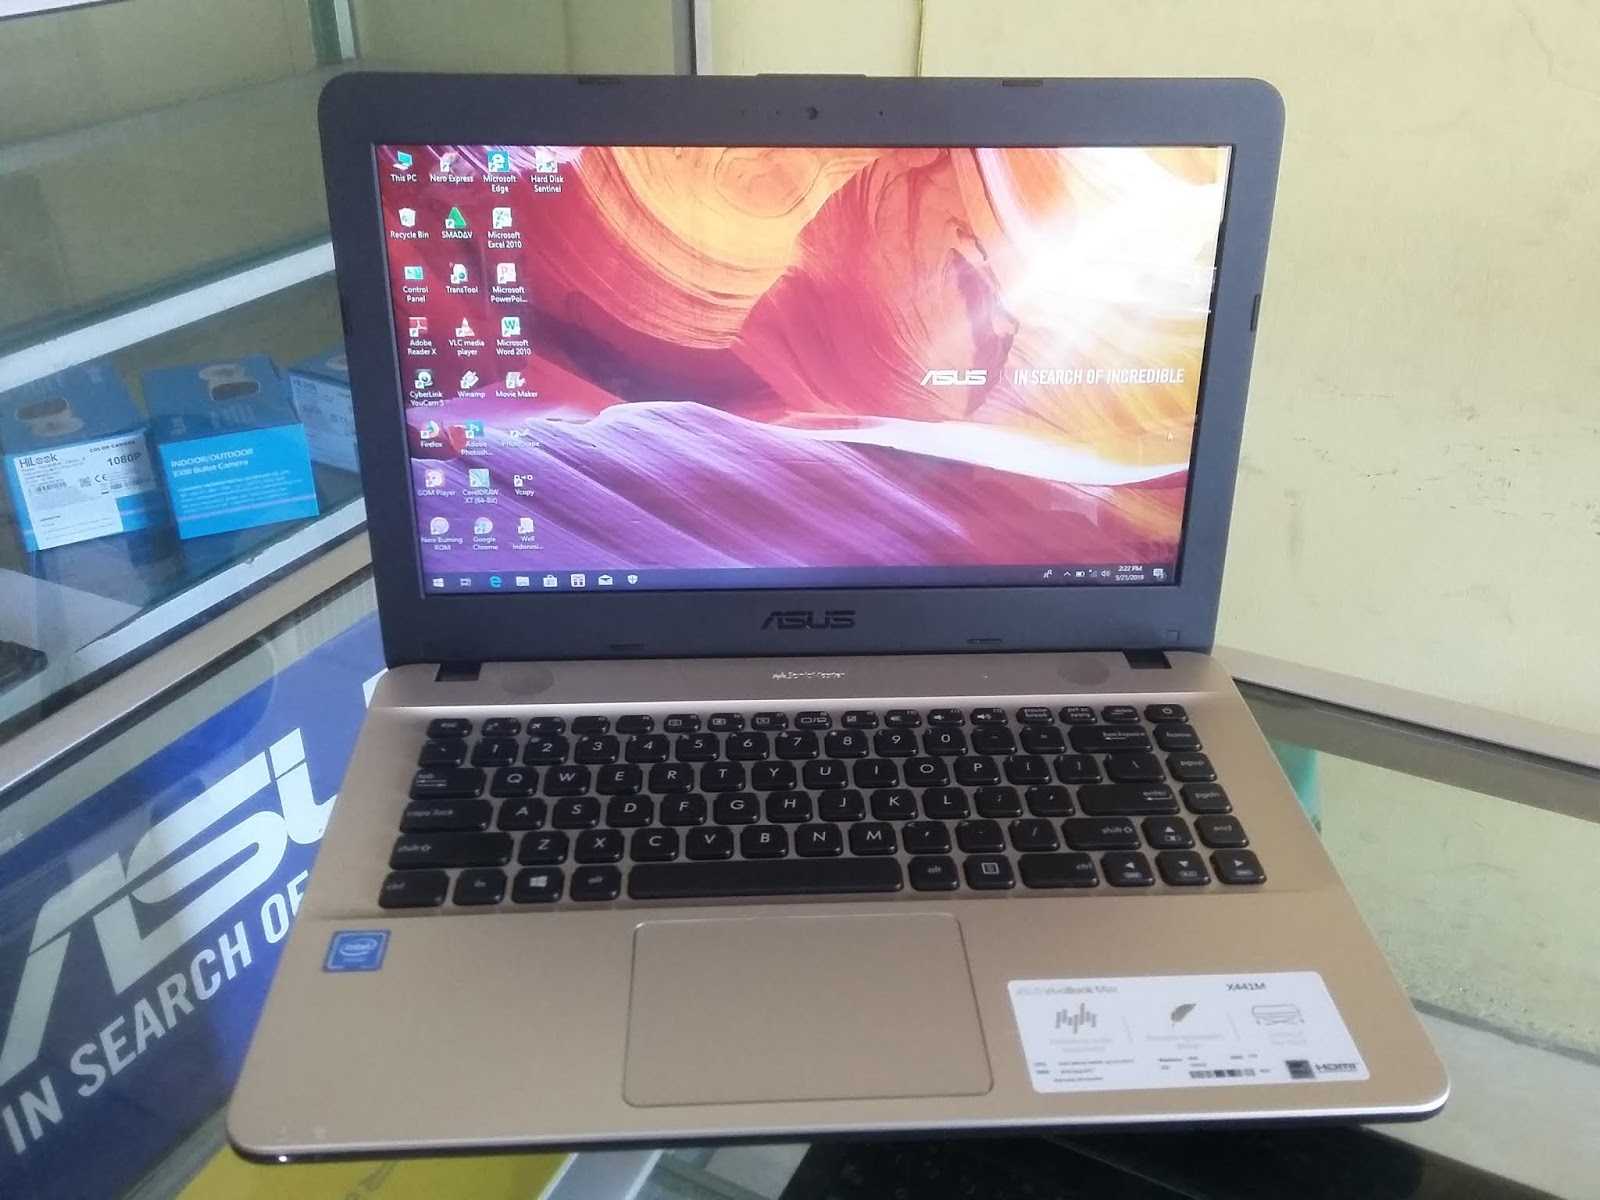 Spesifikasi Laptop Asus x441m